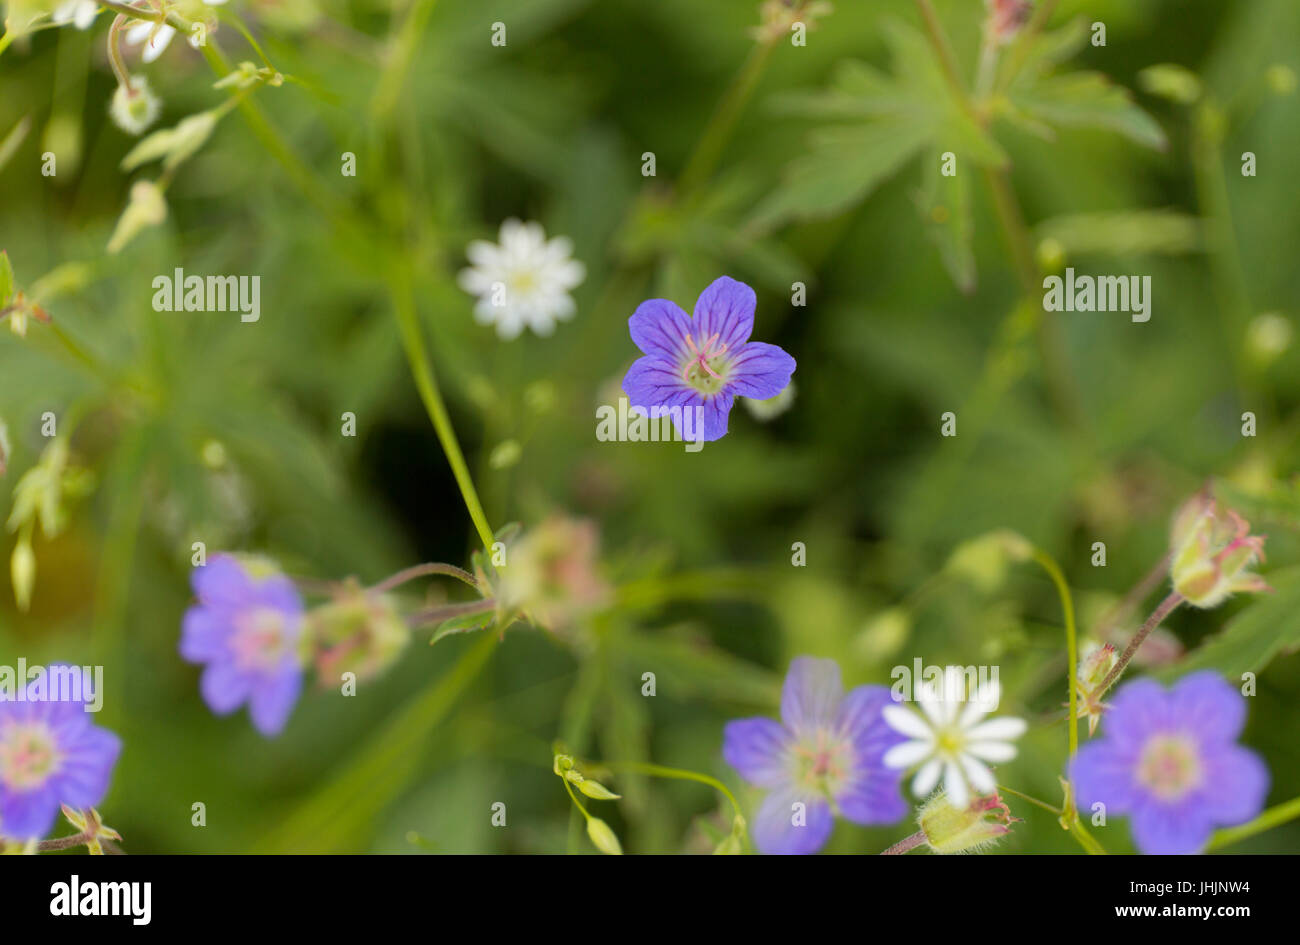 Summer blue wild flower on green blur background Stock Photo